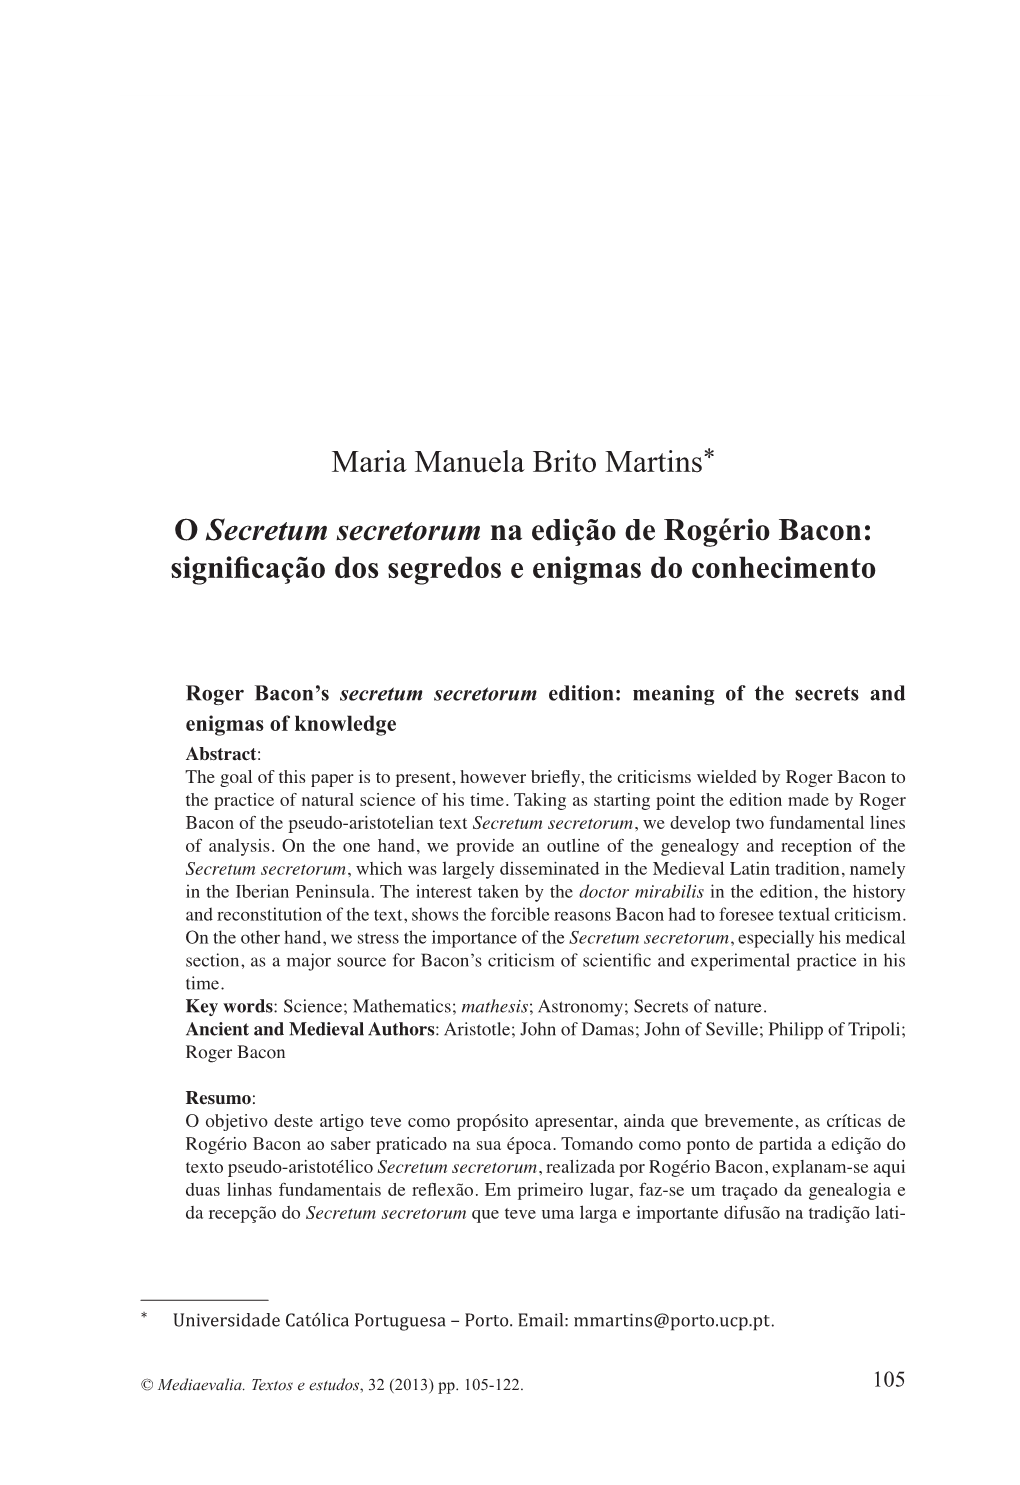 Maria Manuela Brito Martins* O Secretum Secretorum Na Edição De Rogério Bacon: Significação Dos Segredos E Enigmas Do Conhe